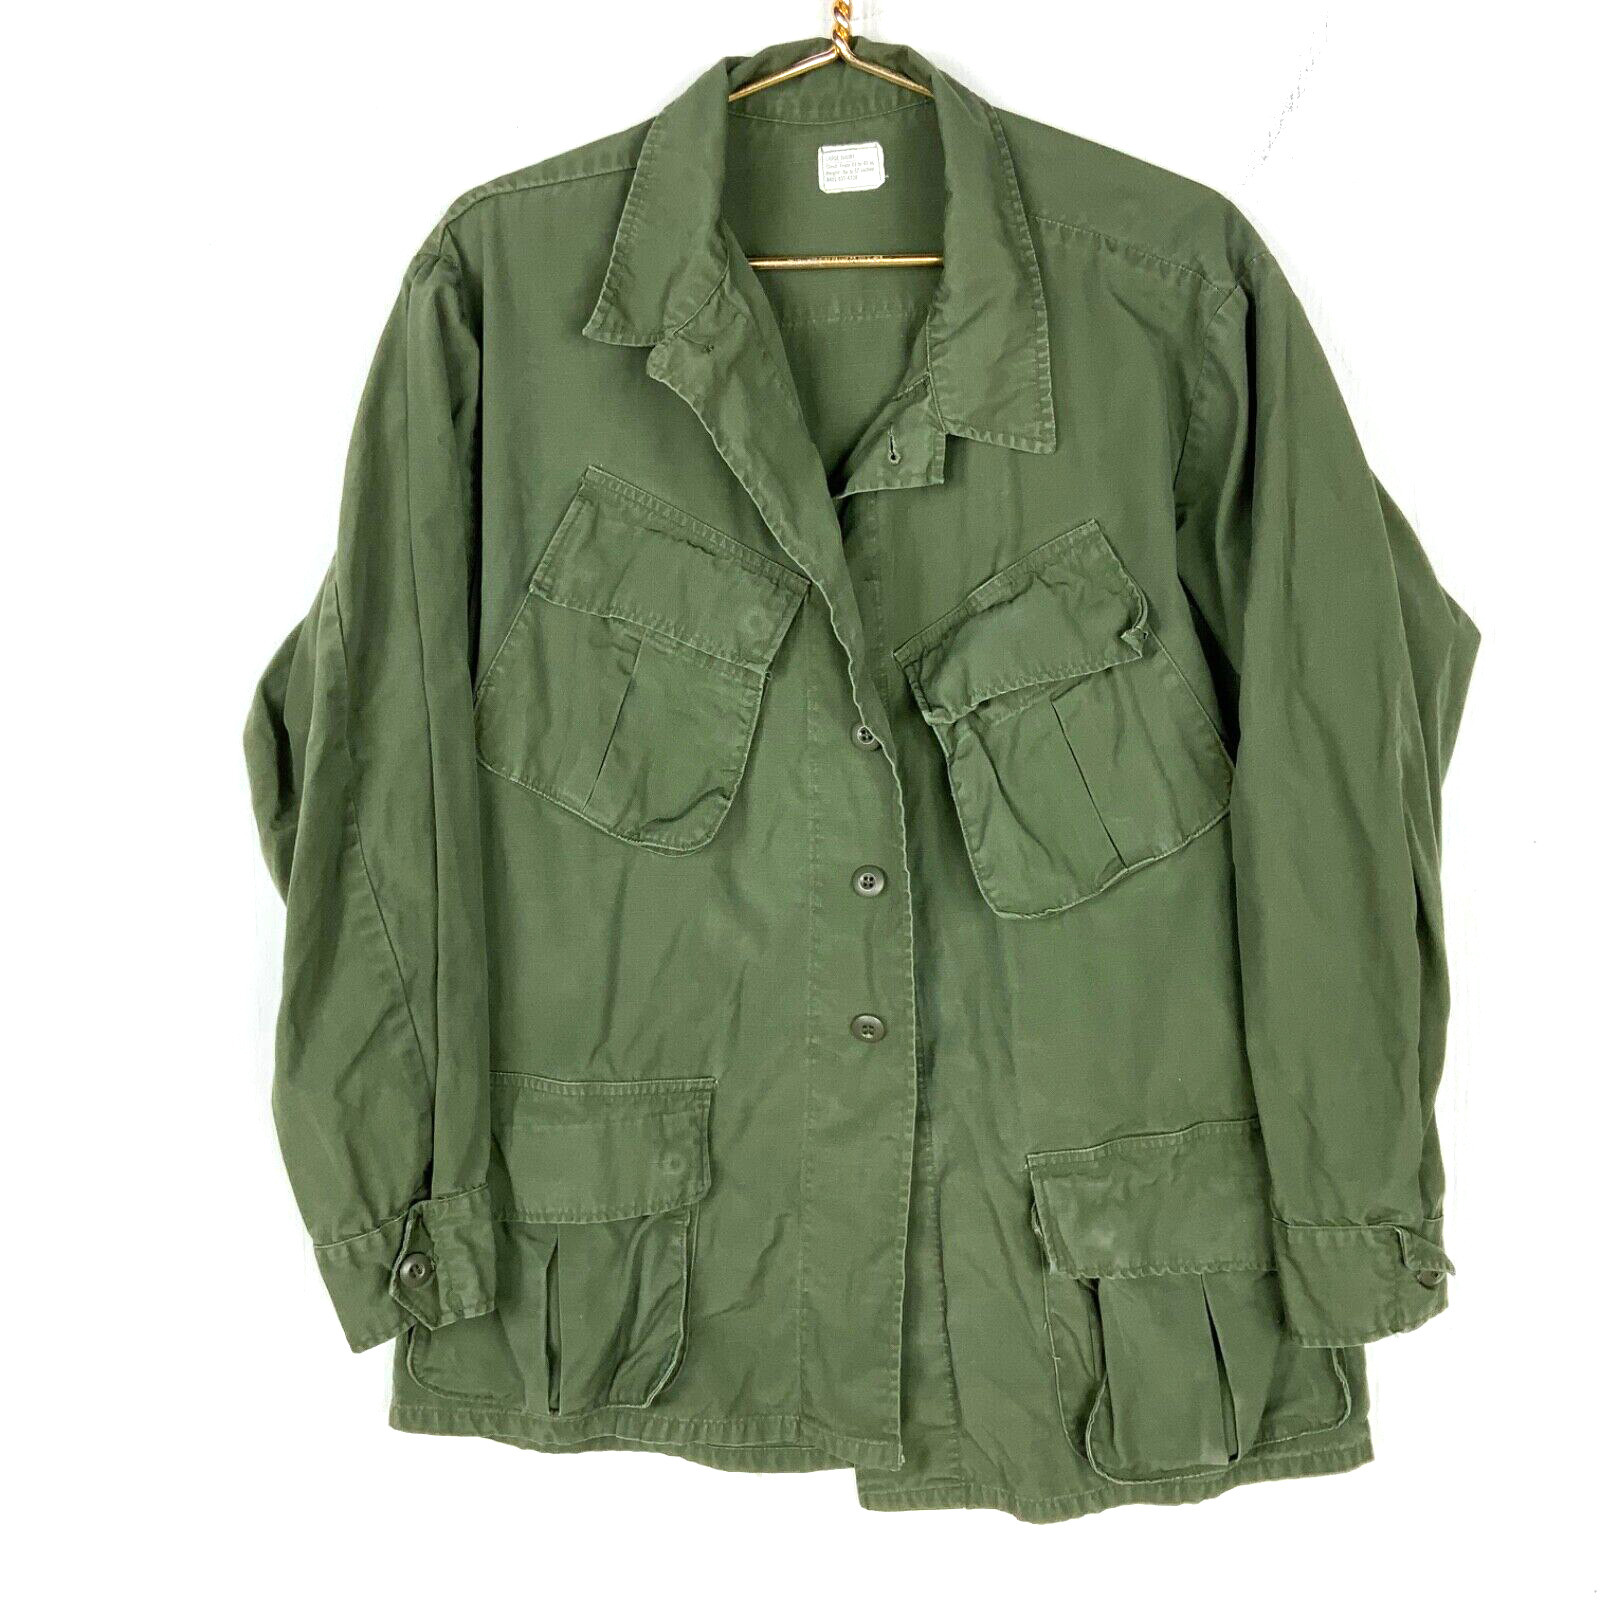 Vintage Us Military OG 107 Shirt Jacket Size Large Green Vietnam Era 60s 70s